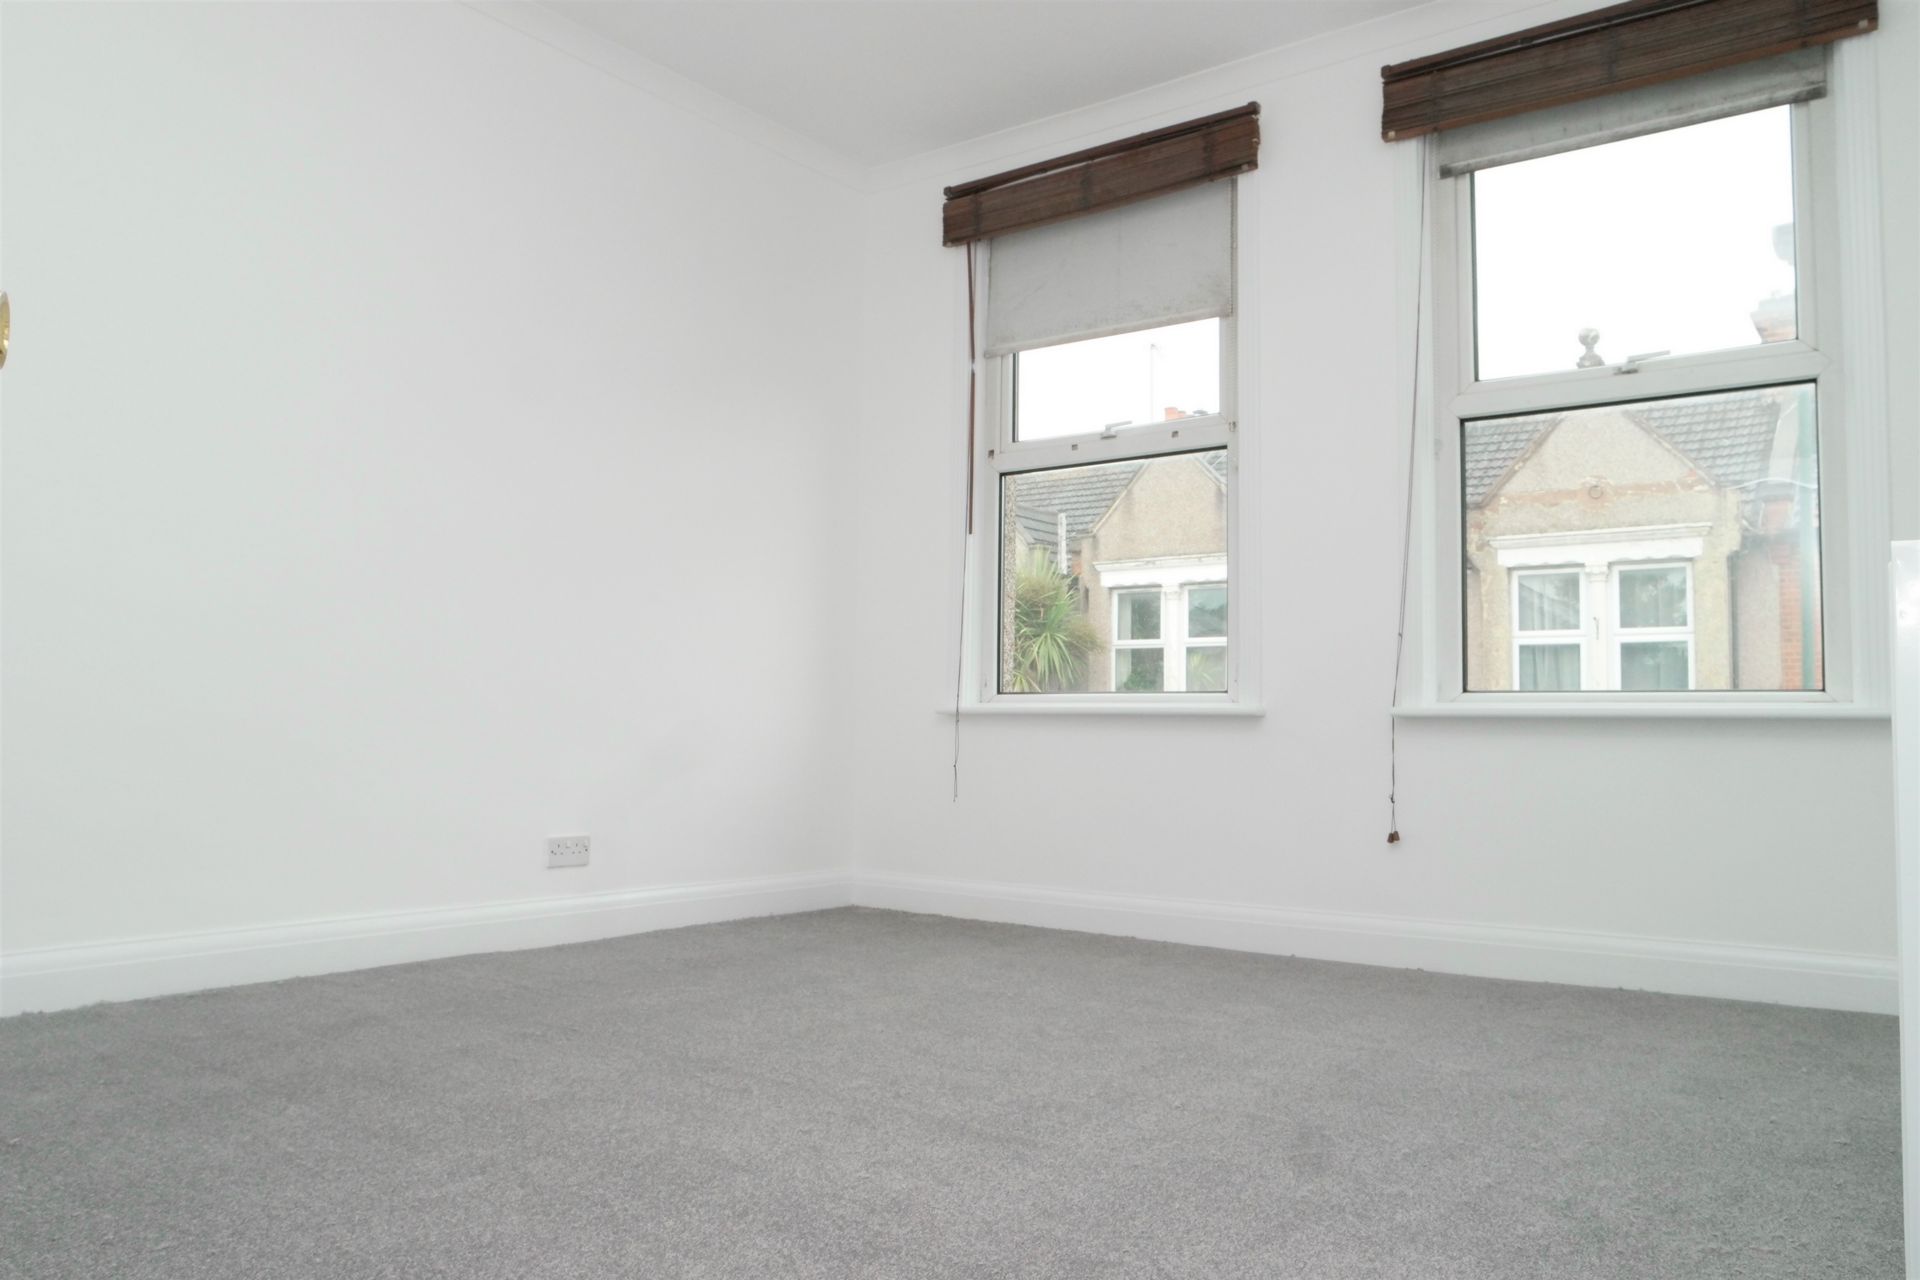 Property To Rent Woolwich Road Bexleyheath Da7 3 Bedroom